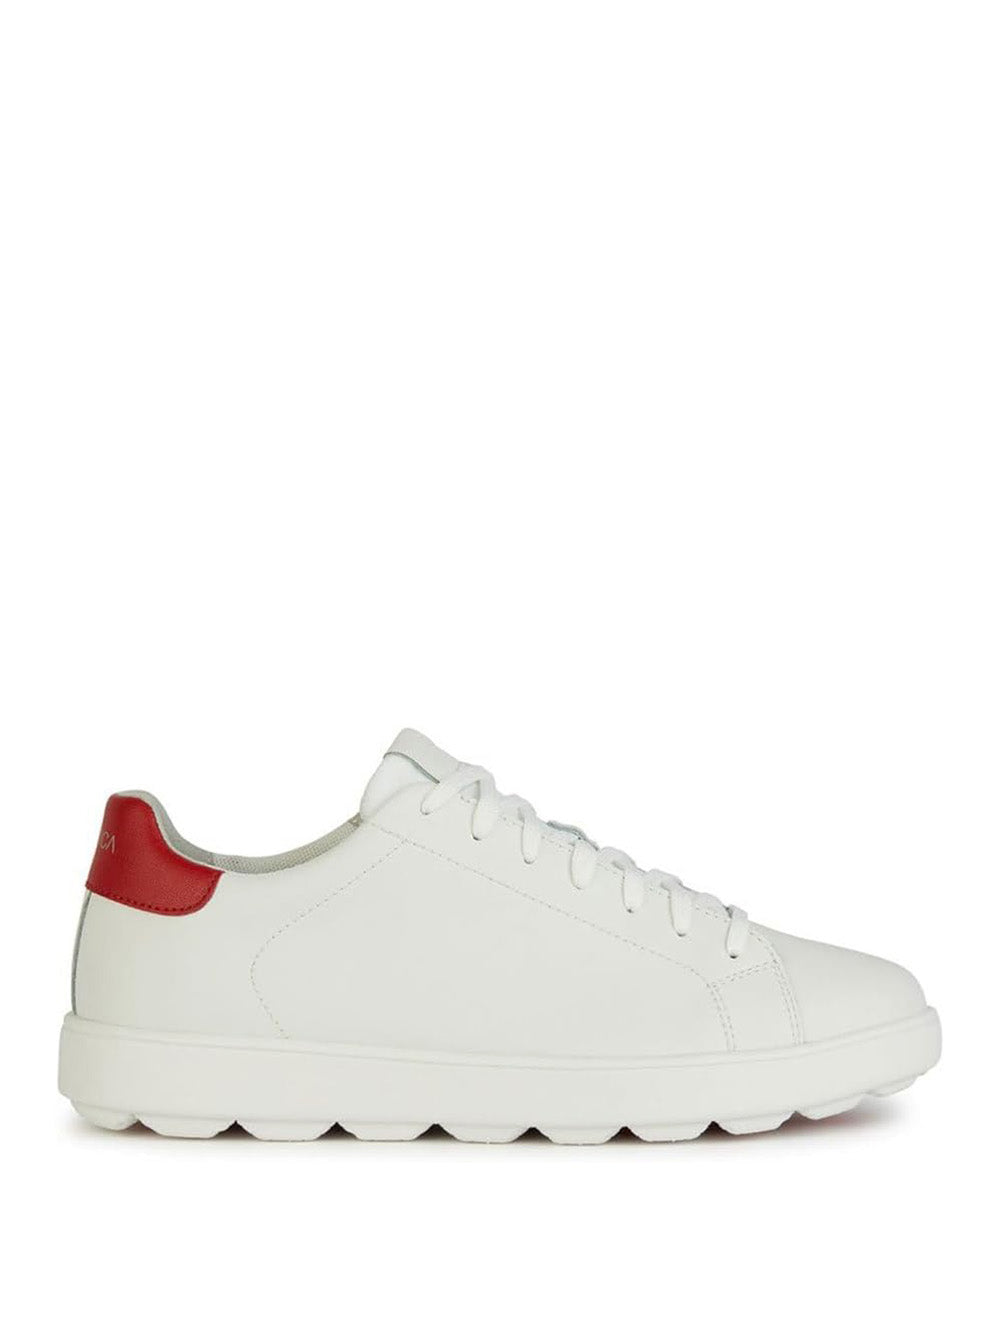 GEOX Sneakers Uomo - Bianco modello U45GPA 0009B